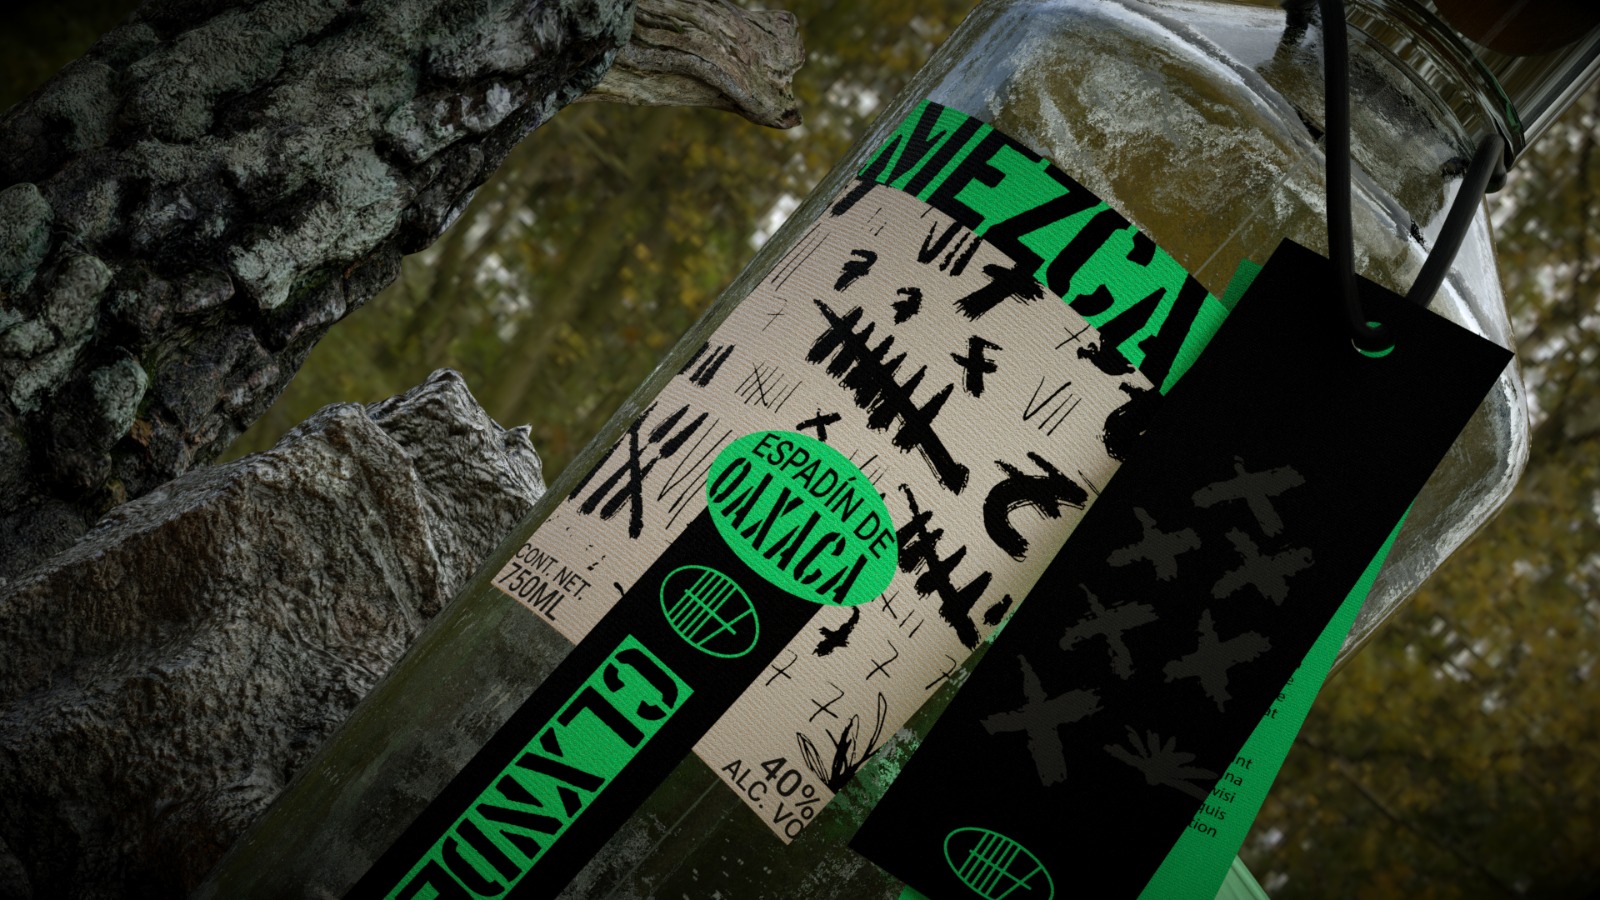 Packaging Design for Clandestine Mezcal, a Distilled Alcoholic Beverage by Hi! Estudio